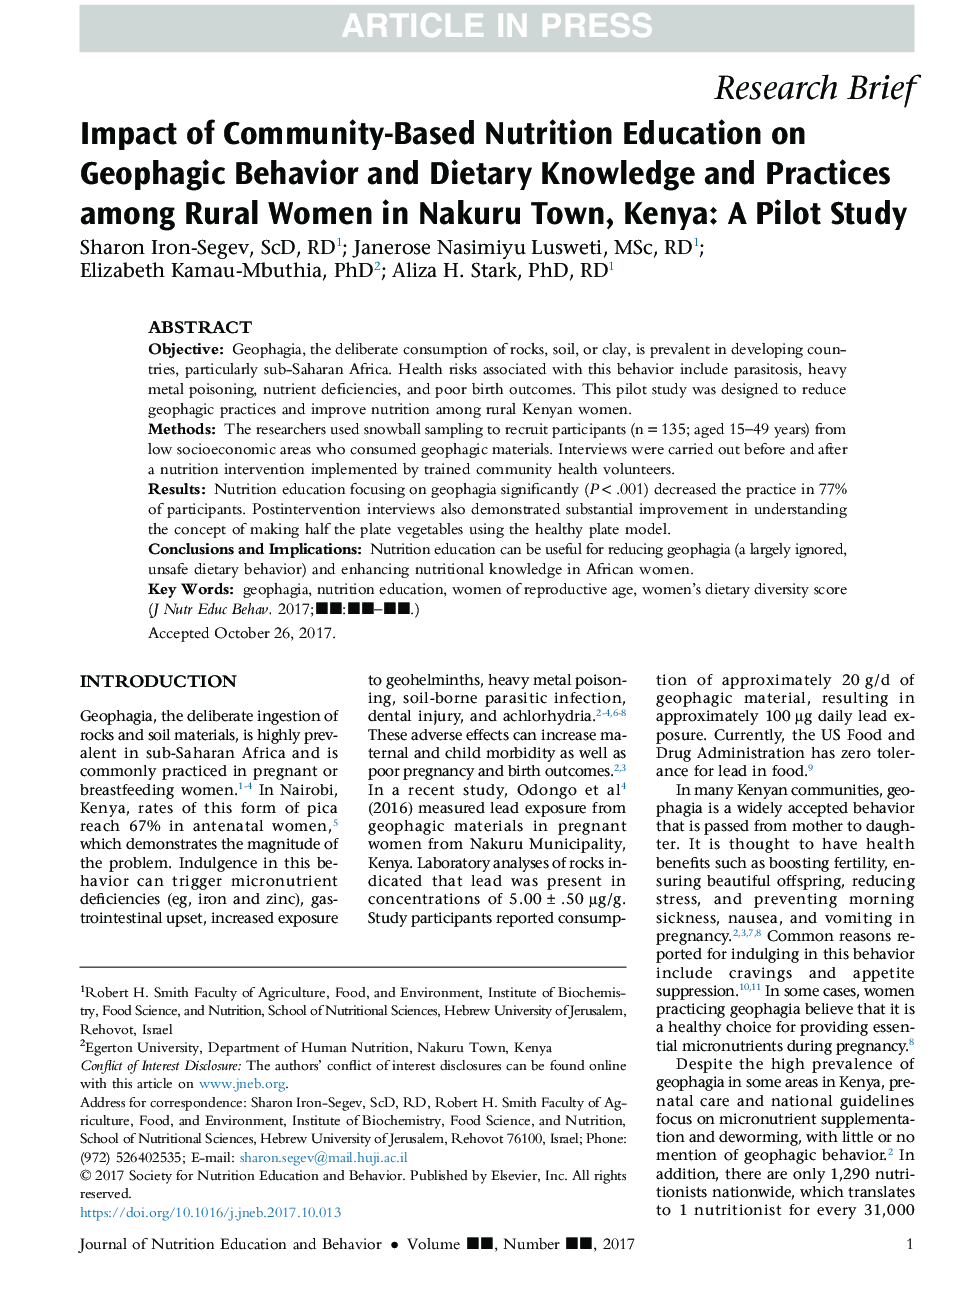 تأثیر آموزش تغذیه مبتنی بر جامعه بر رفتار ژئوفیزیکی و دانش و روشهای تغذیه ای در زنان روستایی در شهر ناکورو، کنیا: مطالعه خلبان 